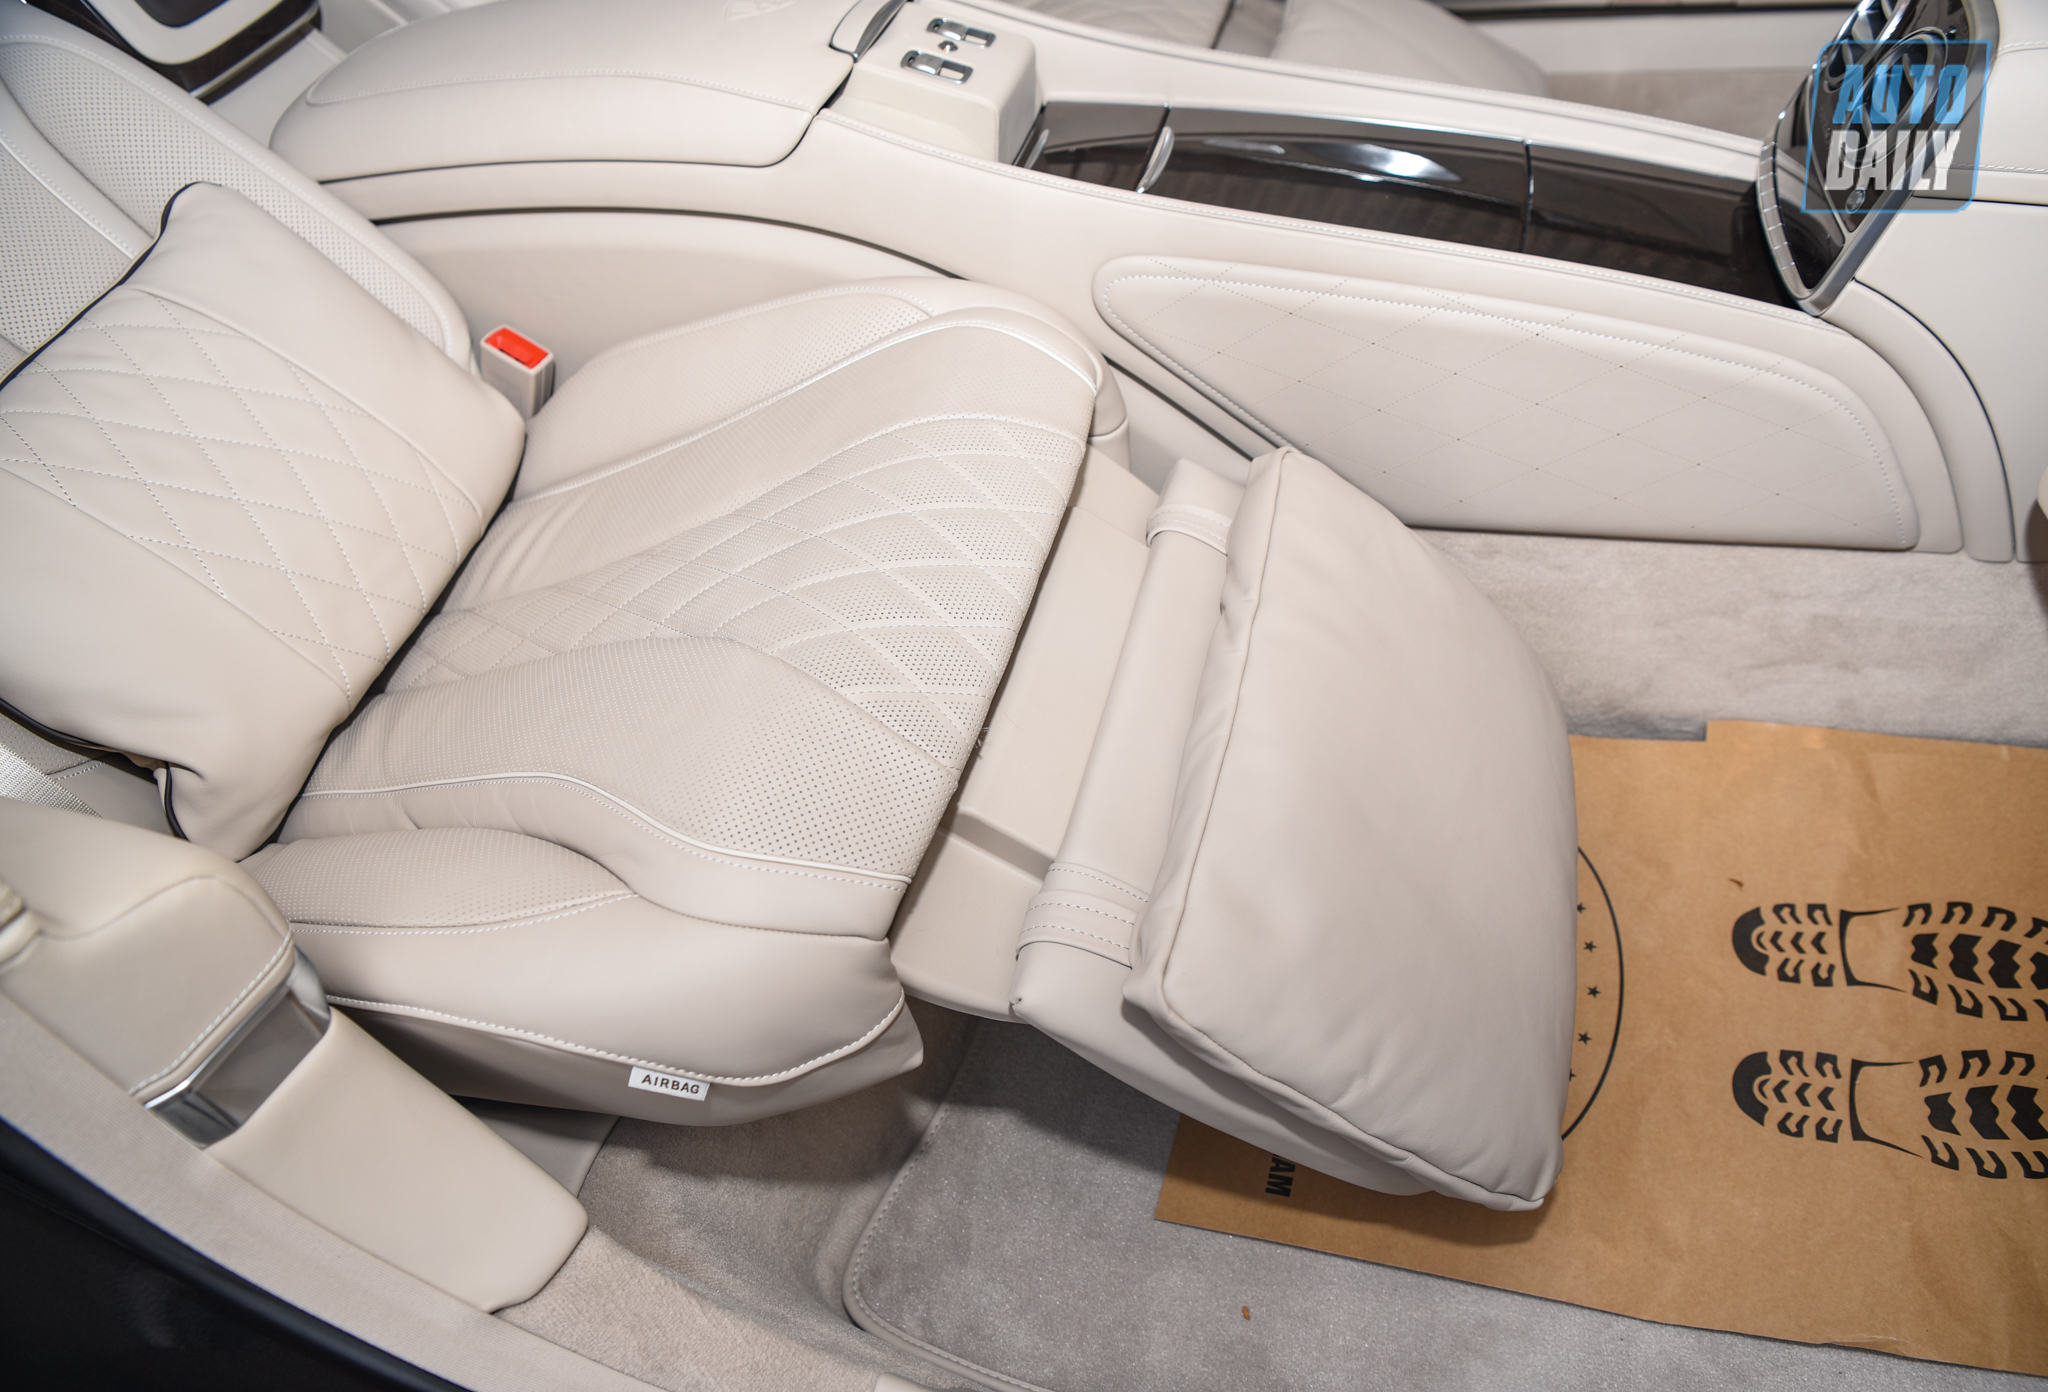 Limousine siêu sang cho 'Chủ tịch' Mercedes-Maybach S650 Pullman đẳng cấp cỡ nào? dsc-0880.jpg